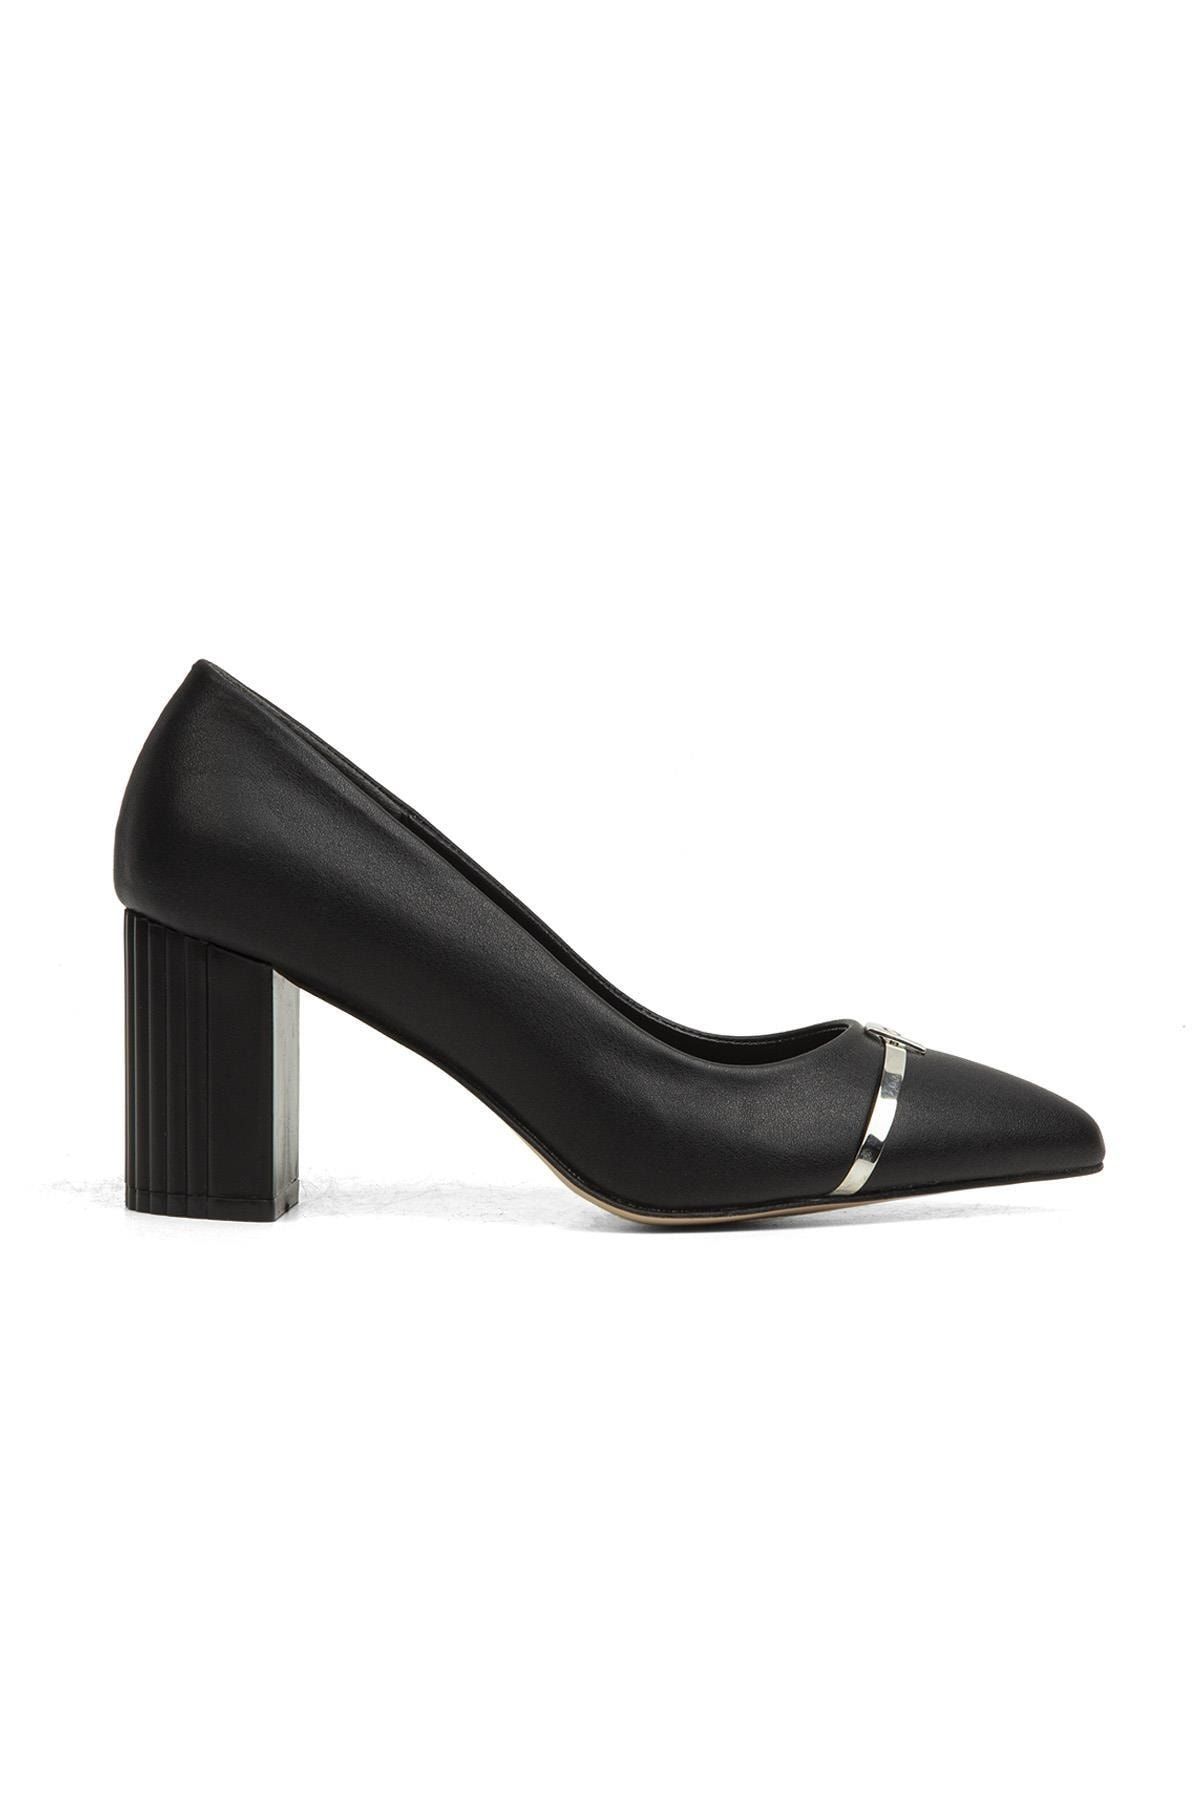 Pierre Cardin ® | Pc-51203 - 3478 Siyah - Kadın Topuklu Ayakkabı